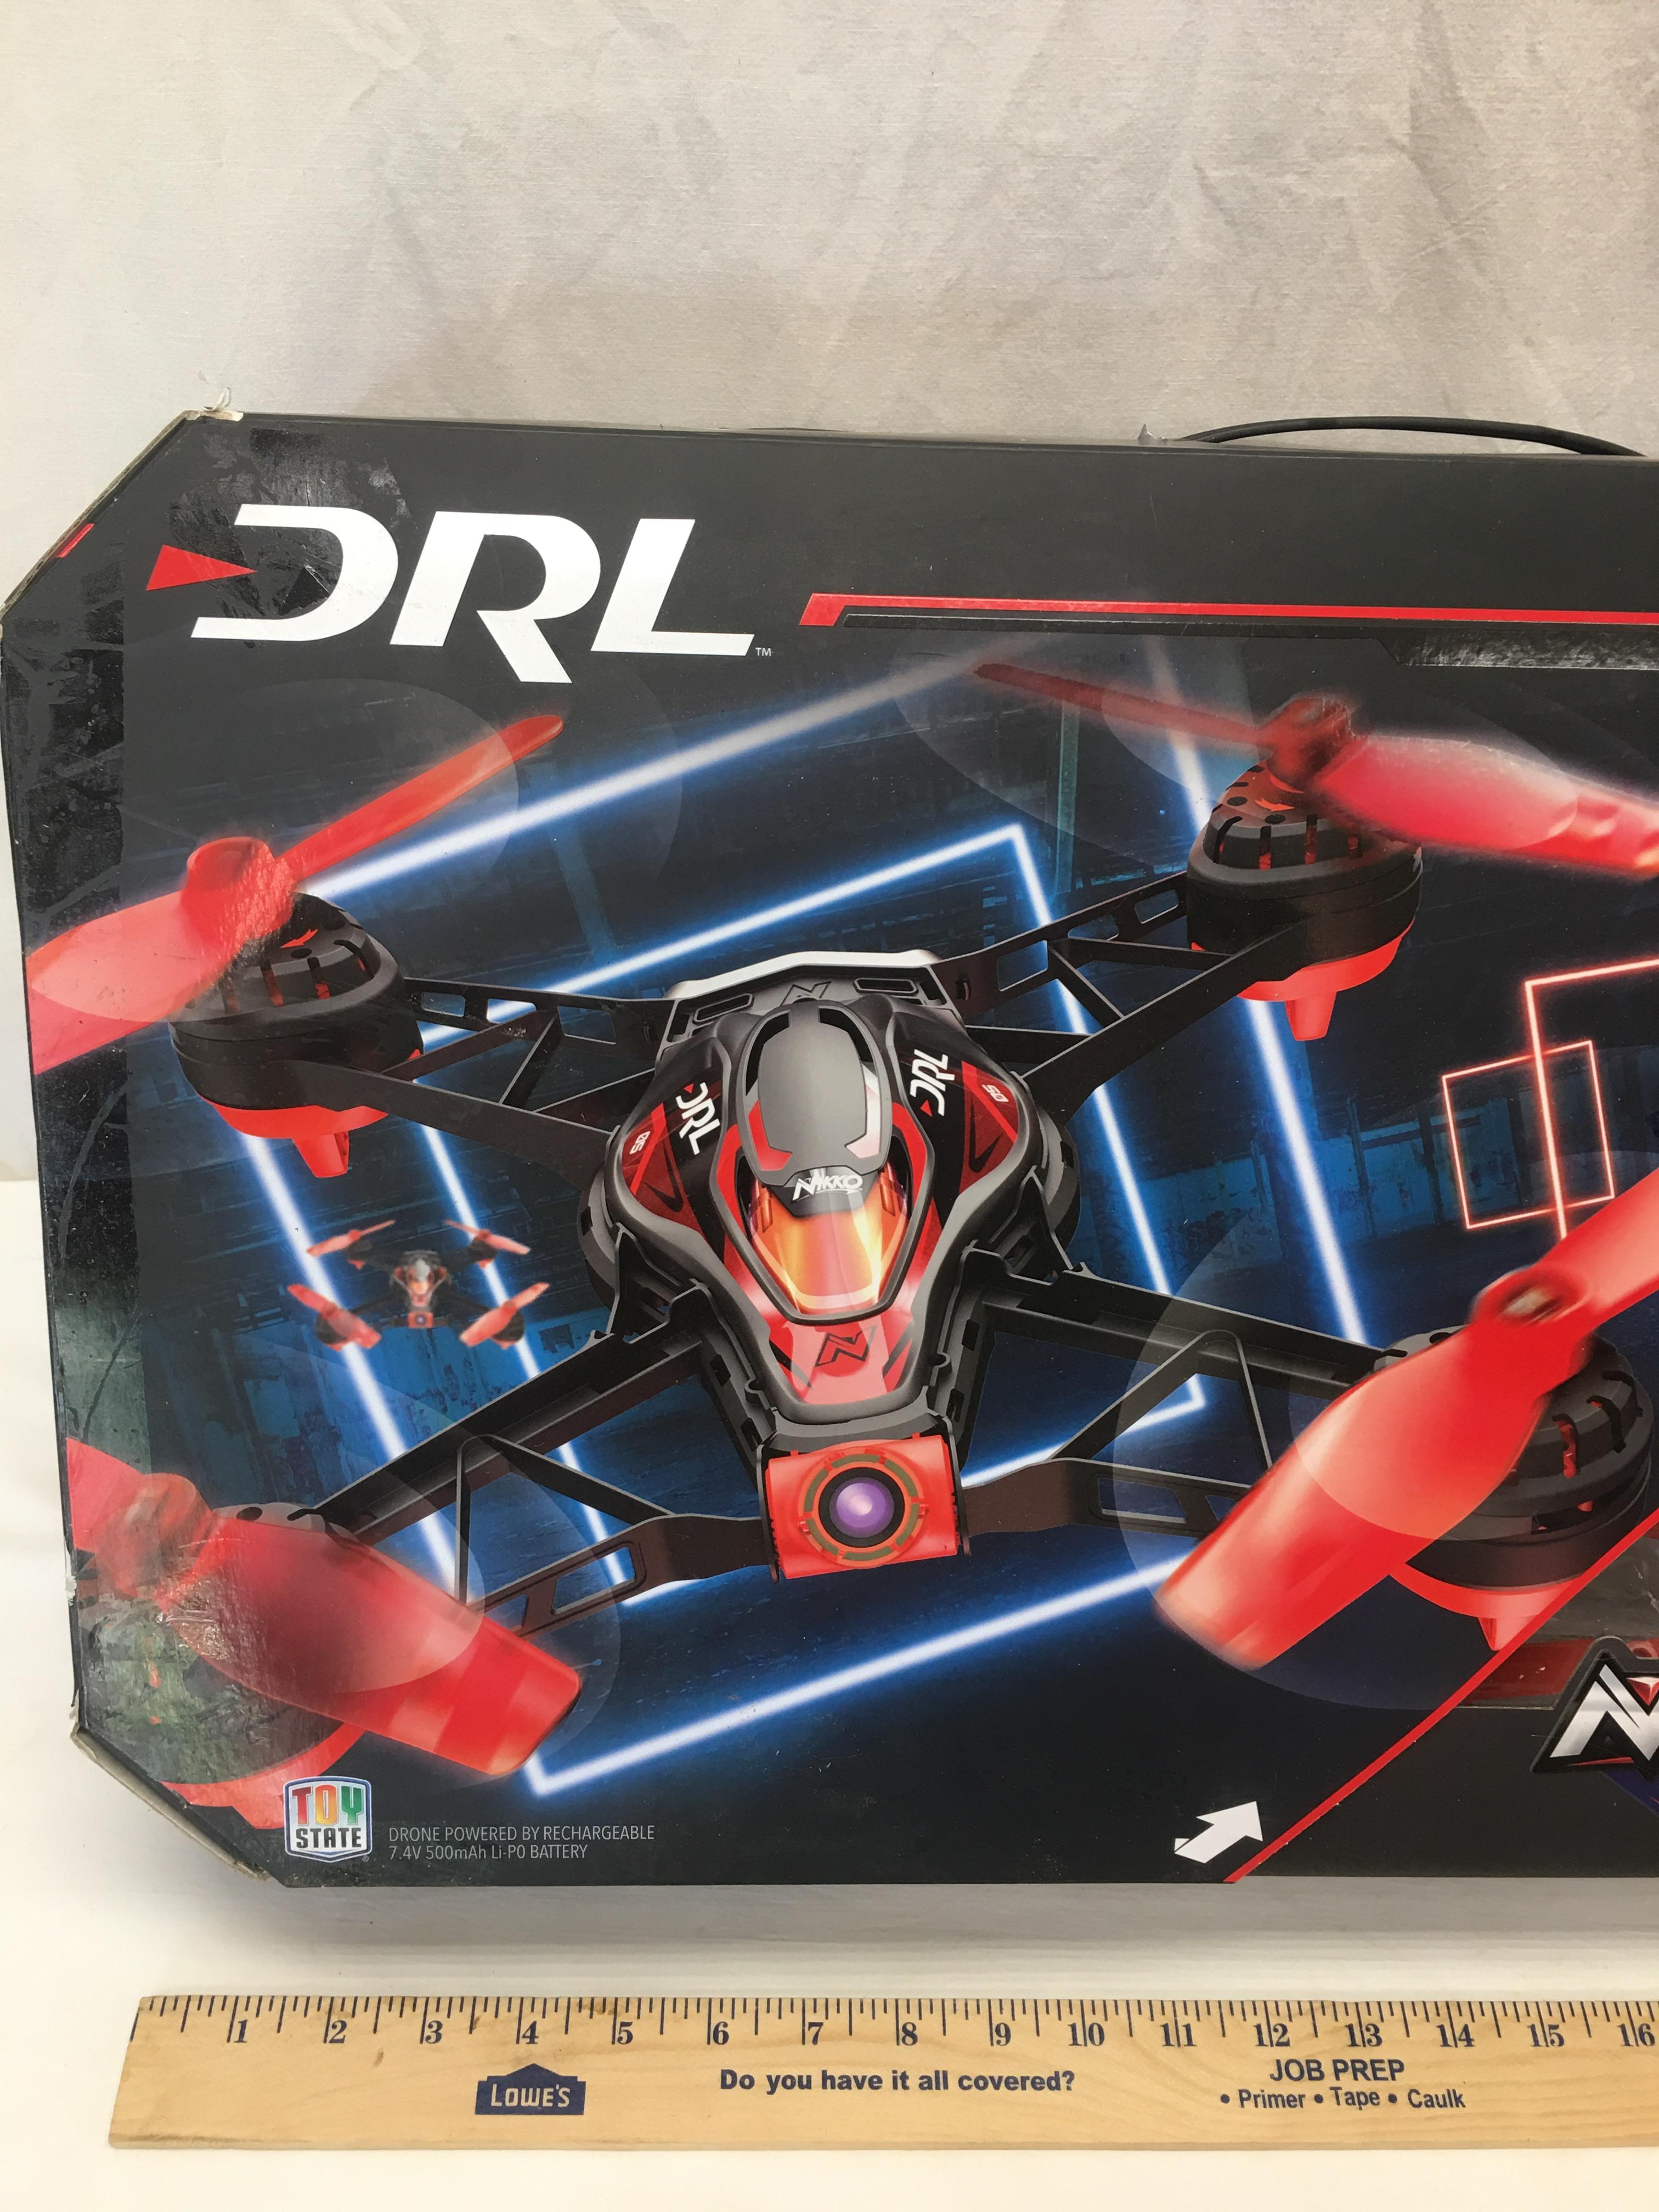 Nikko Air DRL Racing Drone